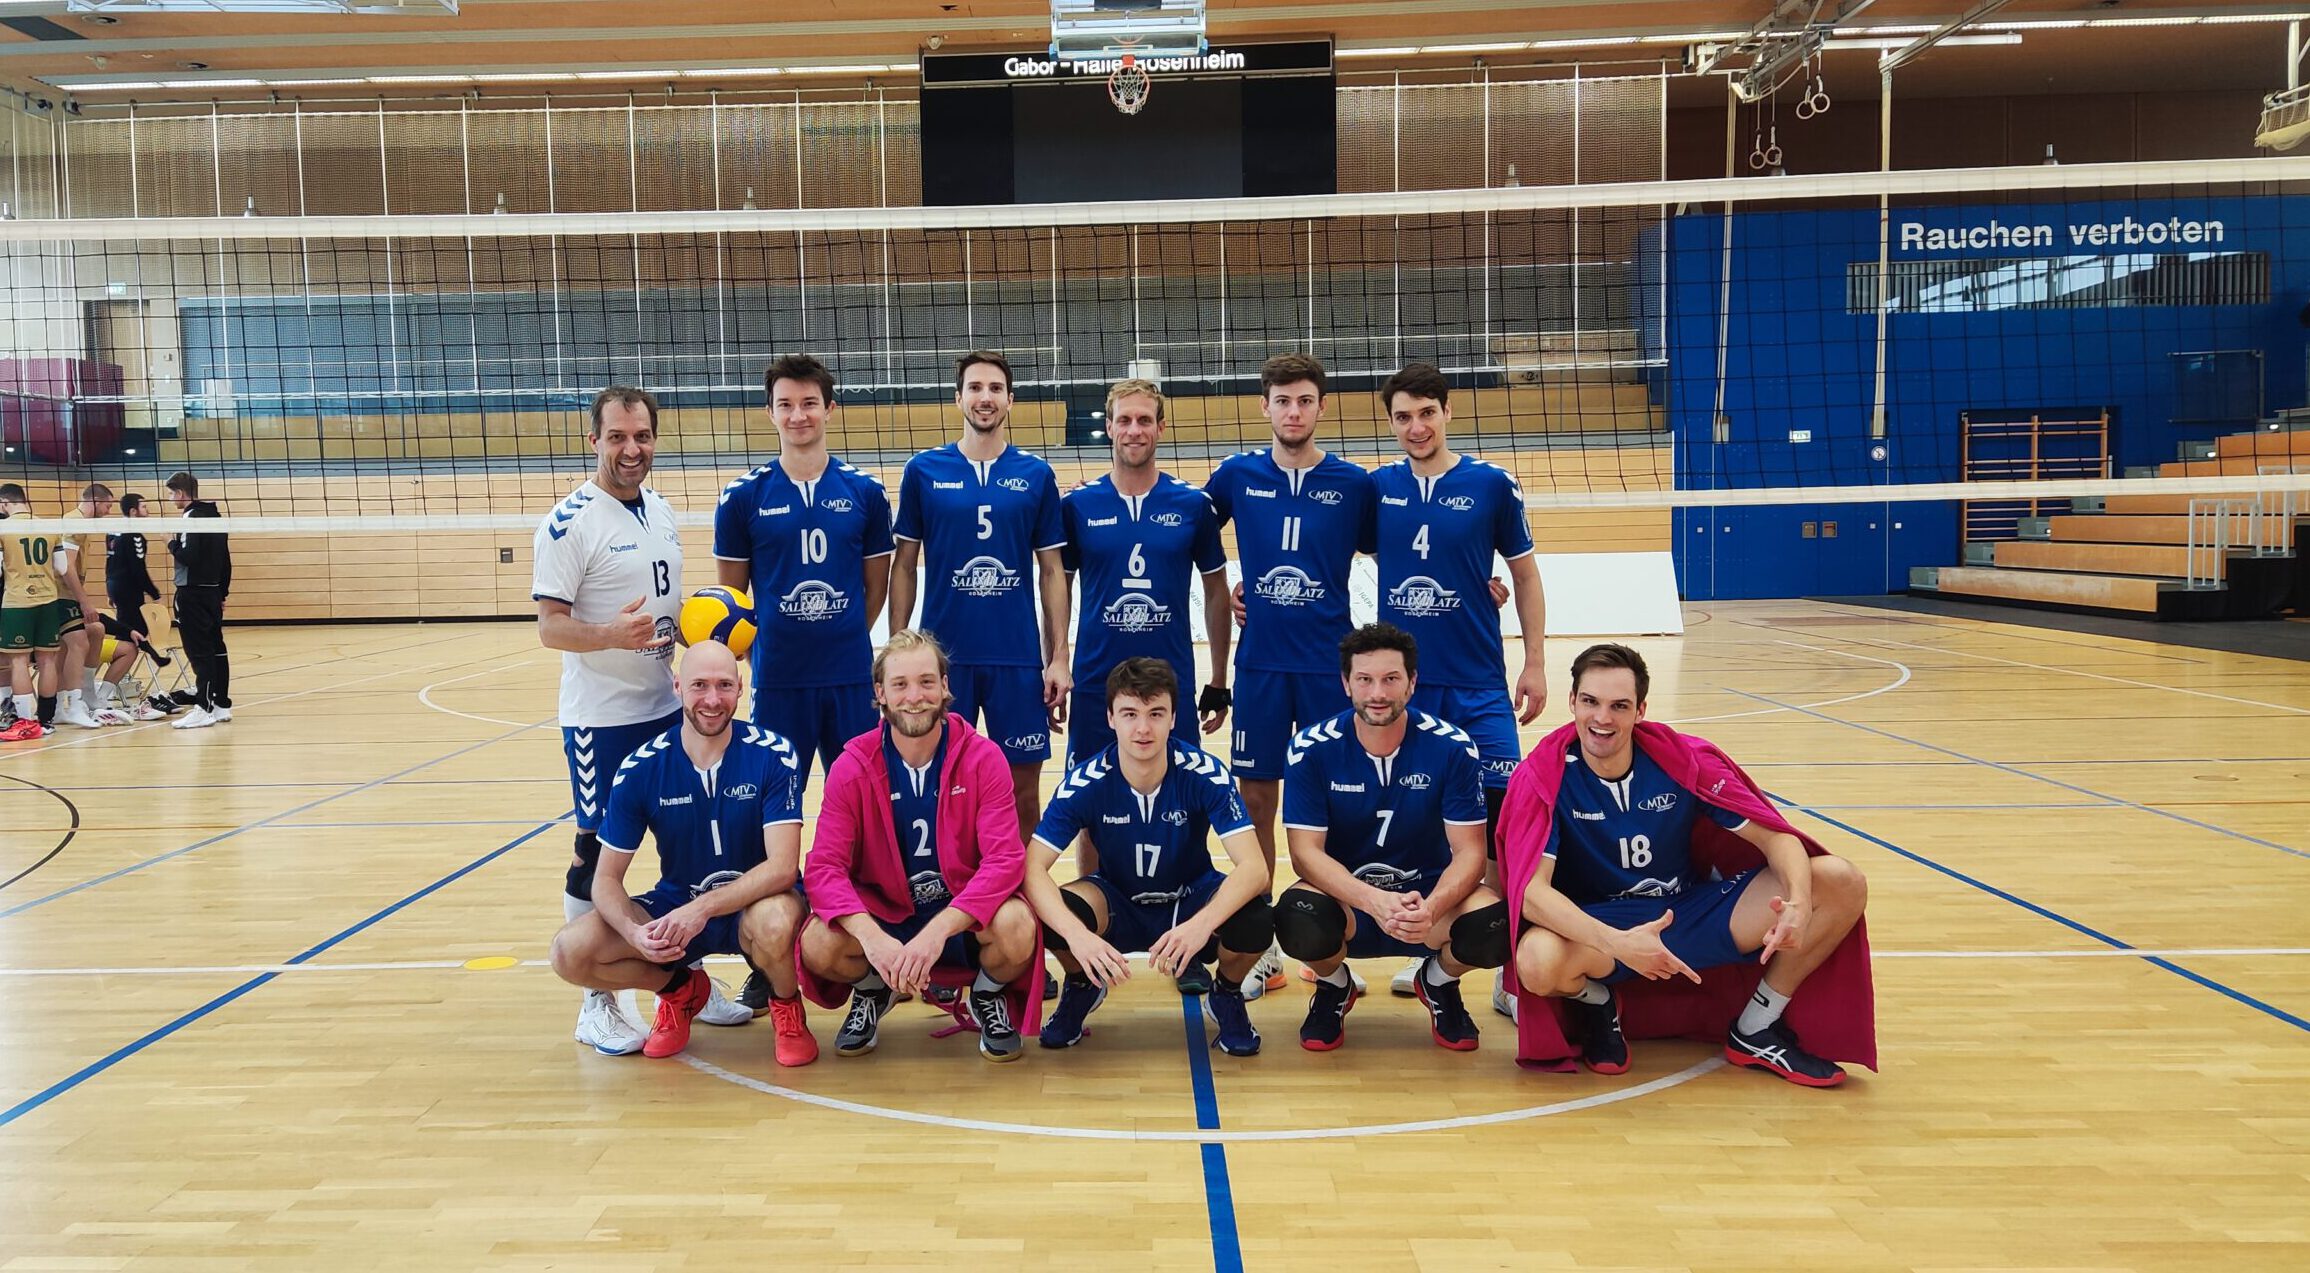 https://www.volleyball-rosenheim.de/wp-content/uploads/2022/10/Volleyball_Rosenheim_Herren1_TB_Muenchen-1-scaled-e1665753570771.jpg